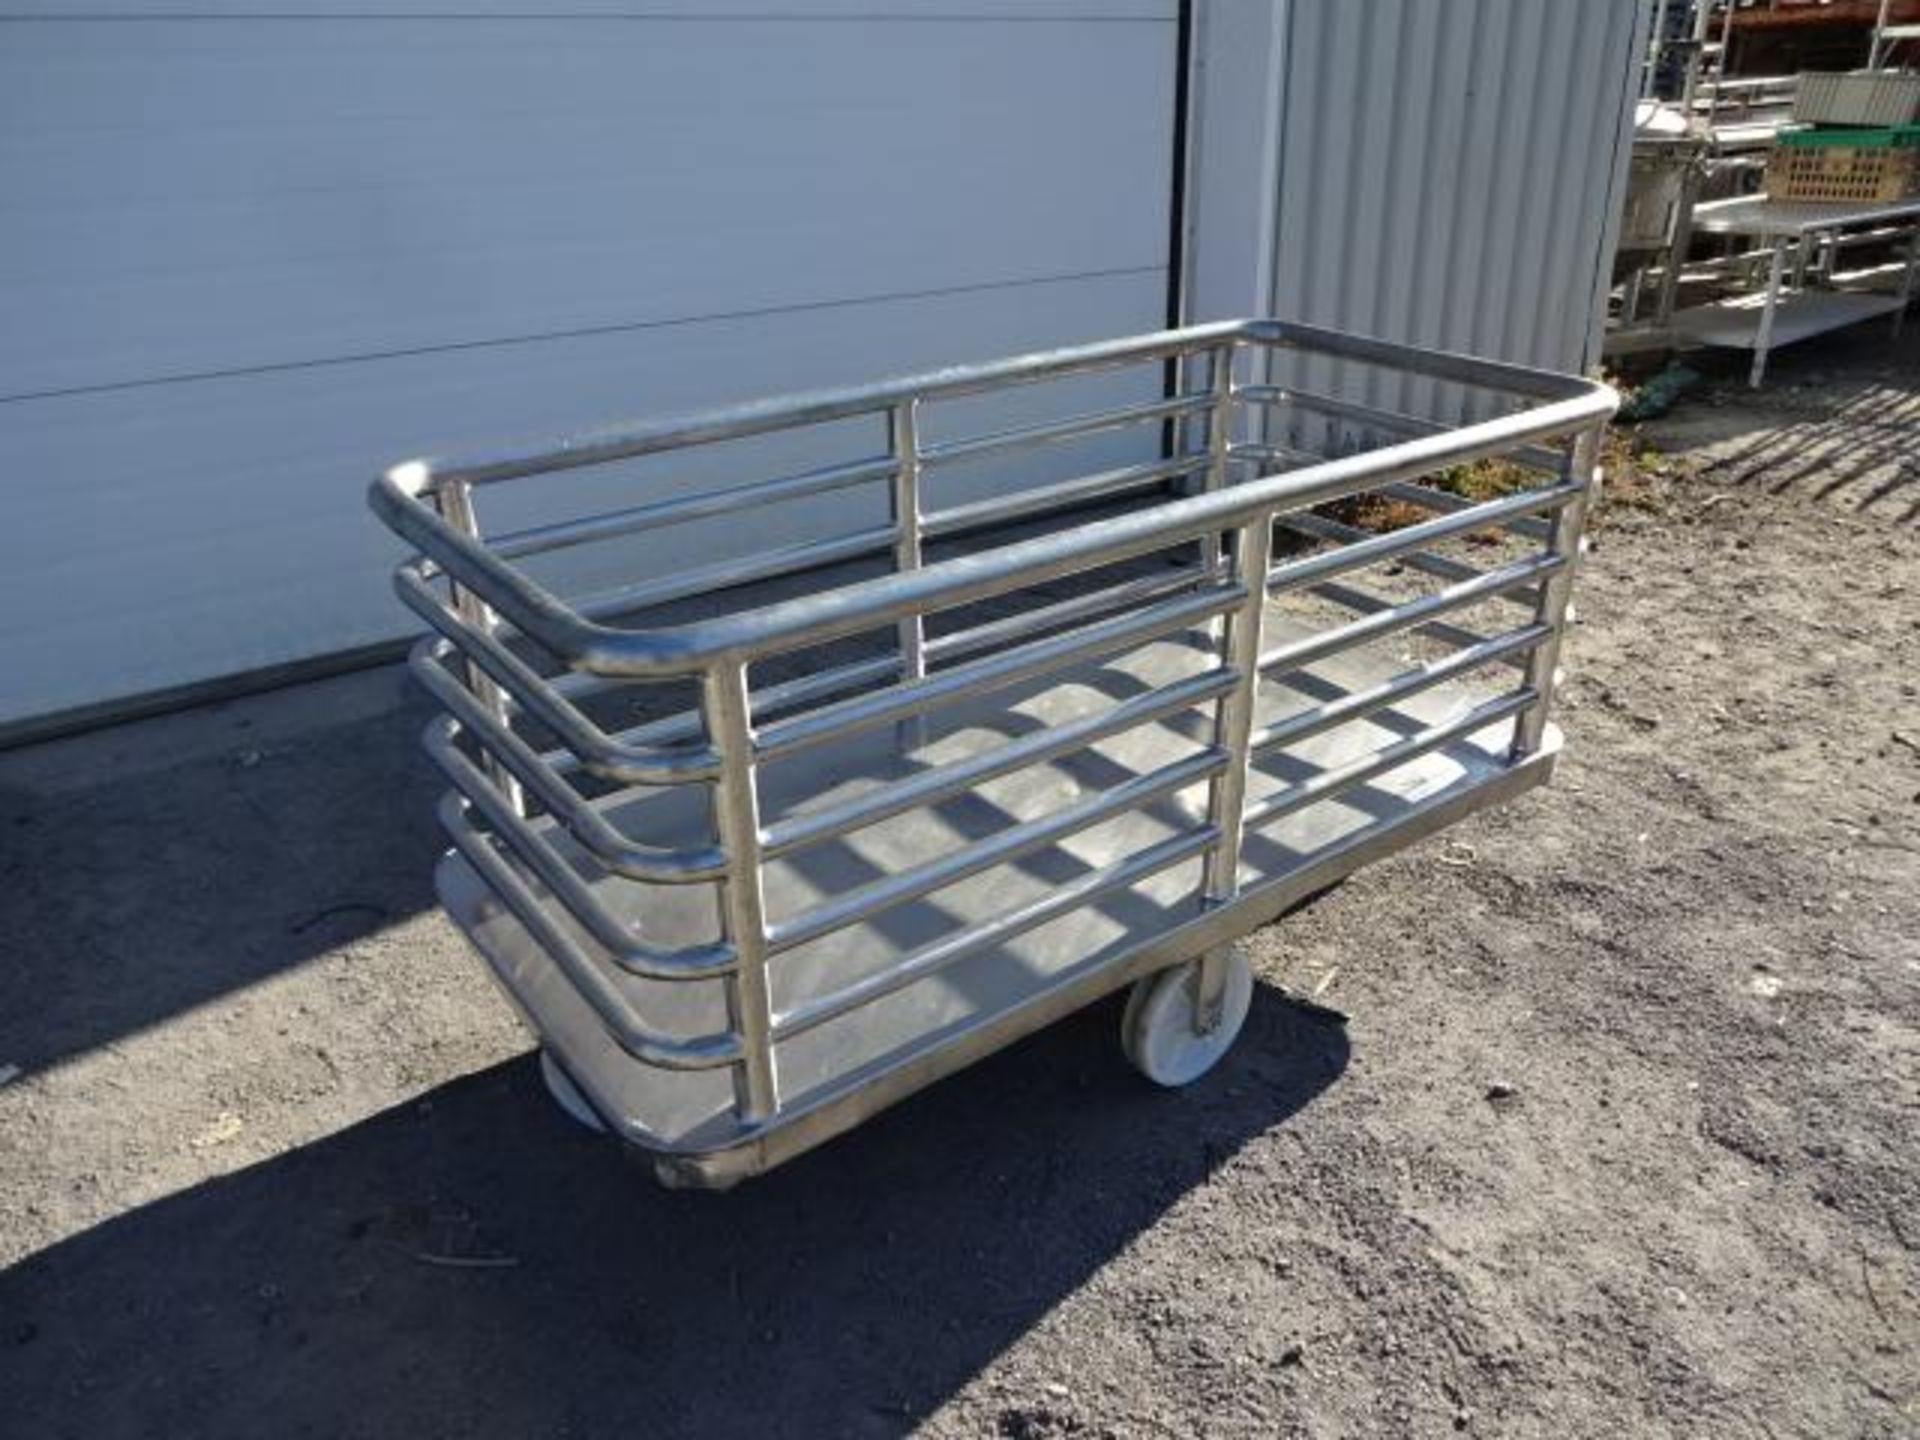 stainless steel trolleys - chariot en inox - Bild 2 aus 6